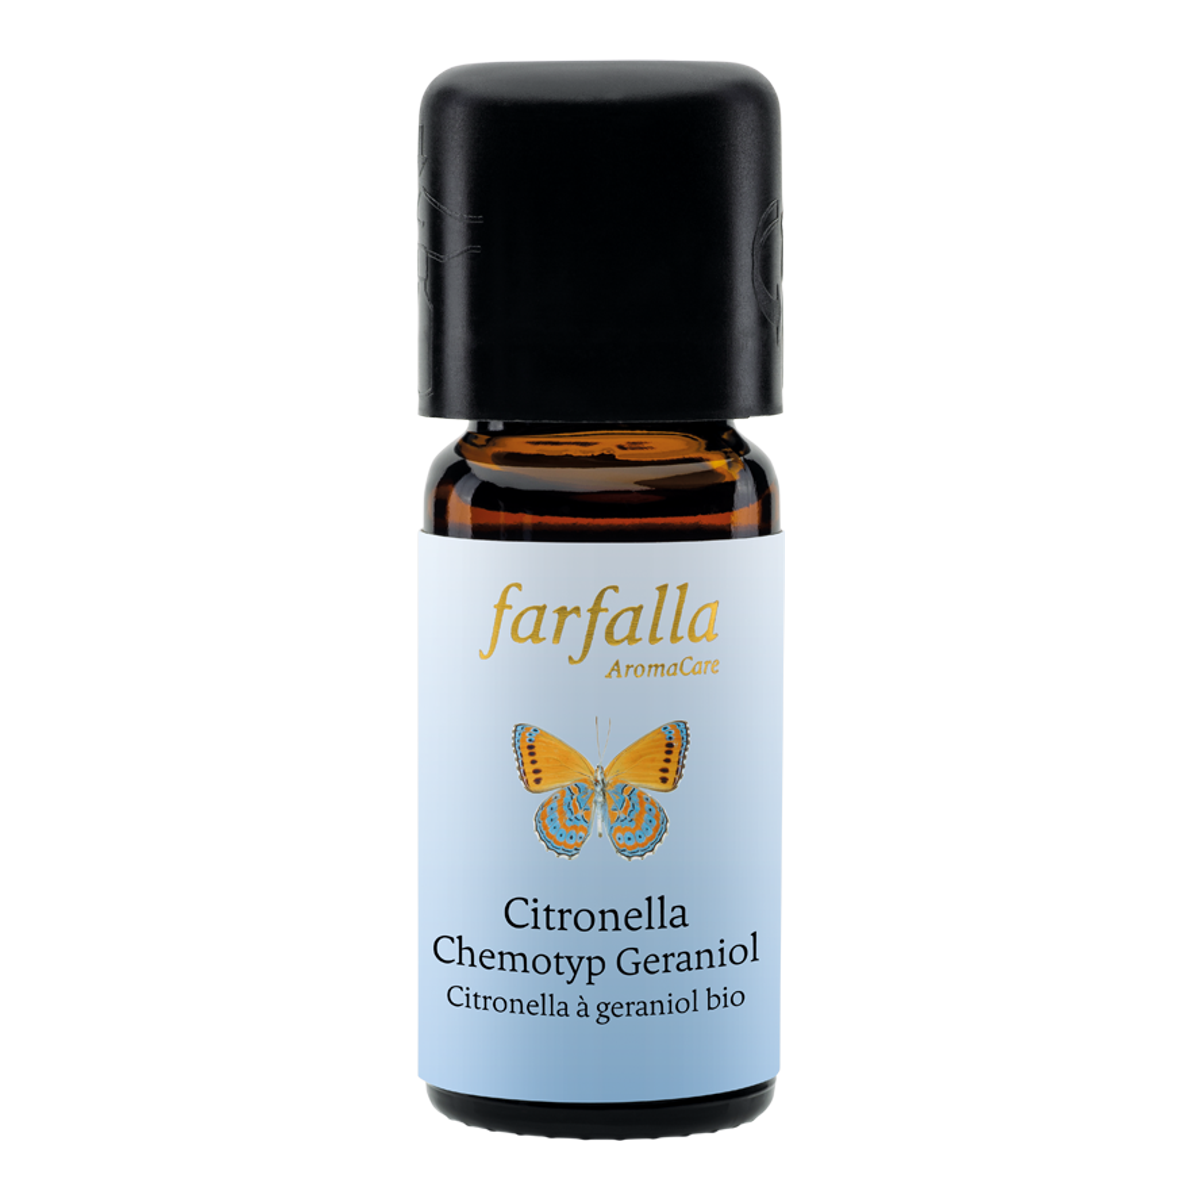 Farfalla Citronella Chemotyp Geraniol bio Grand Cru, ätherisches Öl